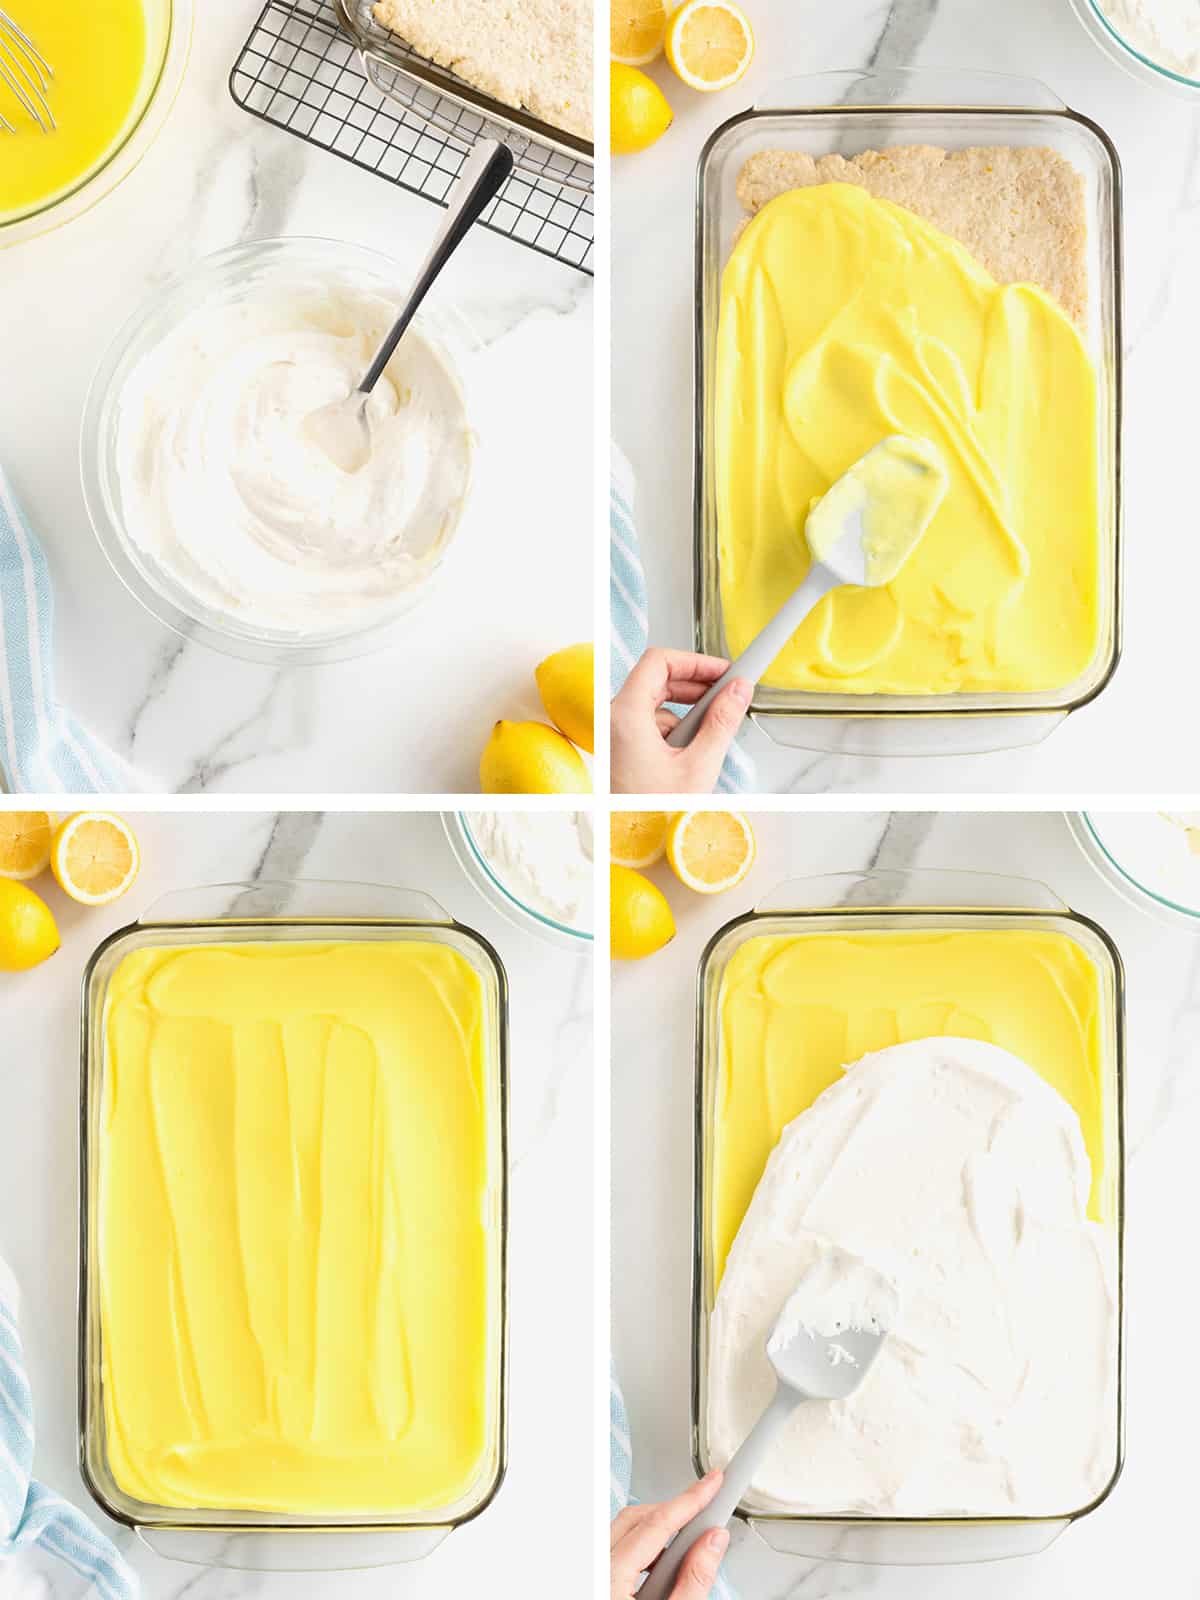 Steps to make Lemon Pudding Bars.